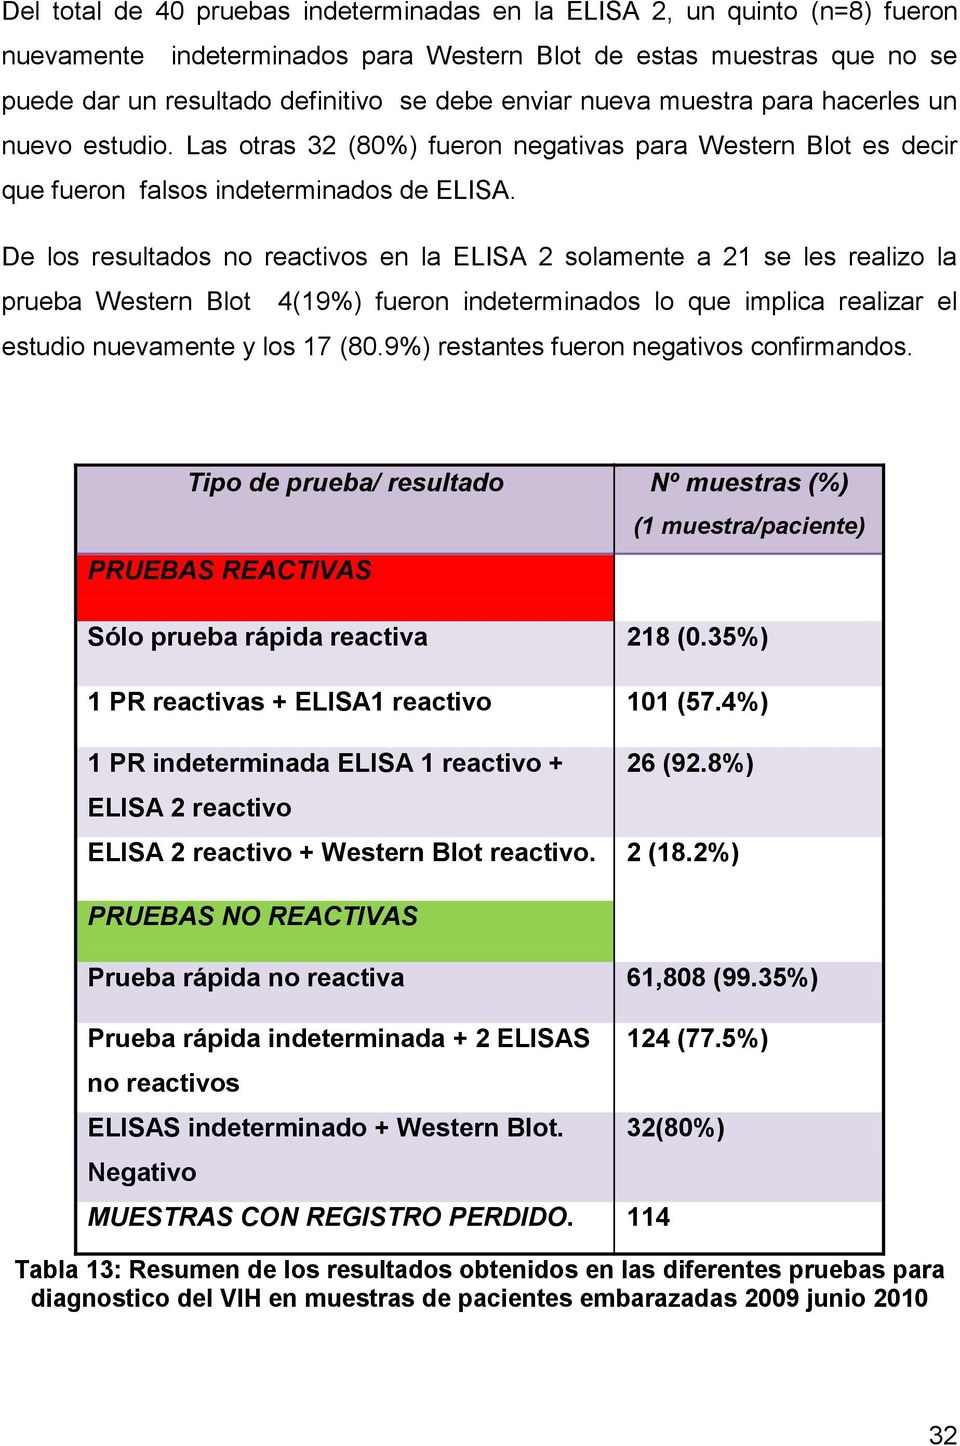 De los resultados no reactivos en la ELISA 2 solamente a 21 se les realizo la prueba Western Blot 4(19%) fueron indeterminados lo que implica realizar el estudio nuevamente y los 17 (80.